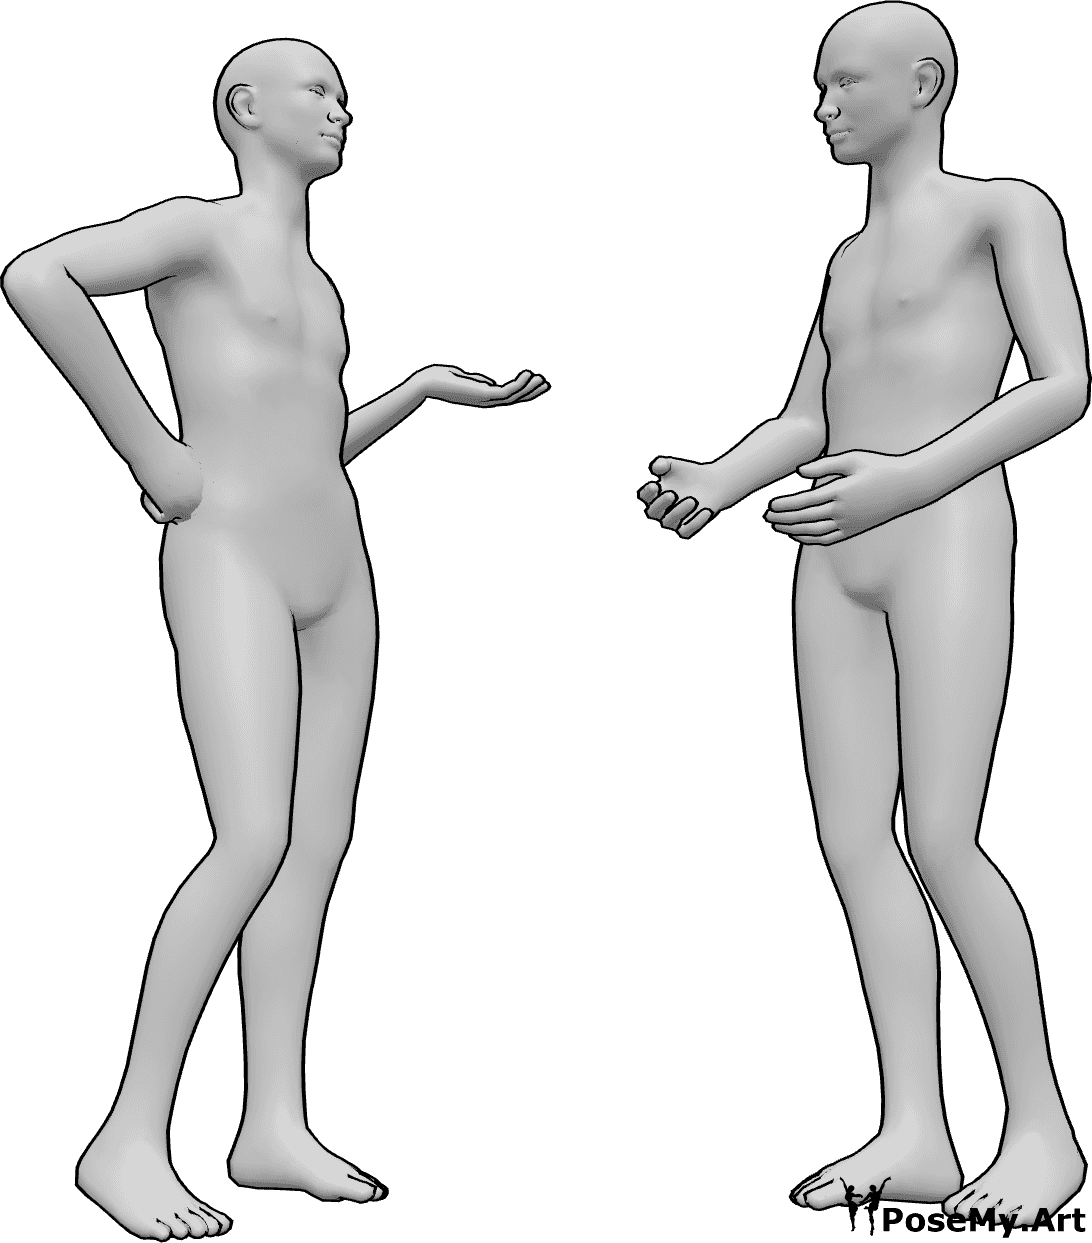 Riferimento alle pose- Maschi in piedi in posa parlante - Due uomini sono in piedi e stanno parlando, conversando in modo informale.